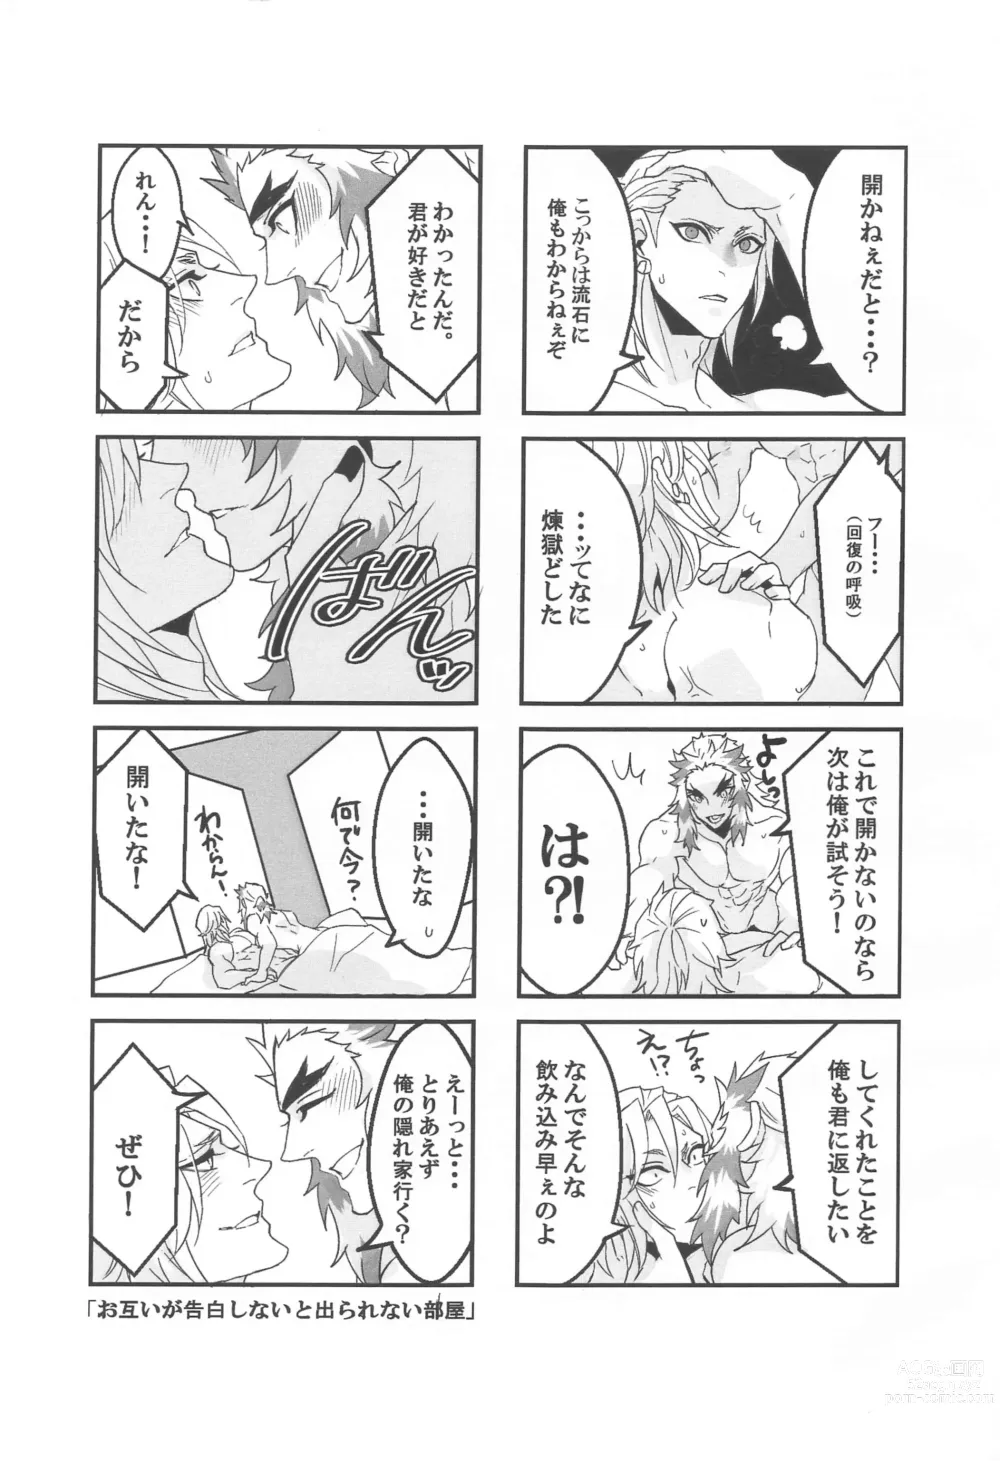 Page 16 of doujinshi ●● Shinai to Derarenai Heya